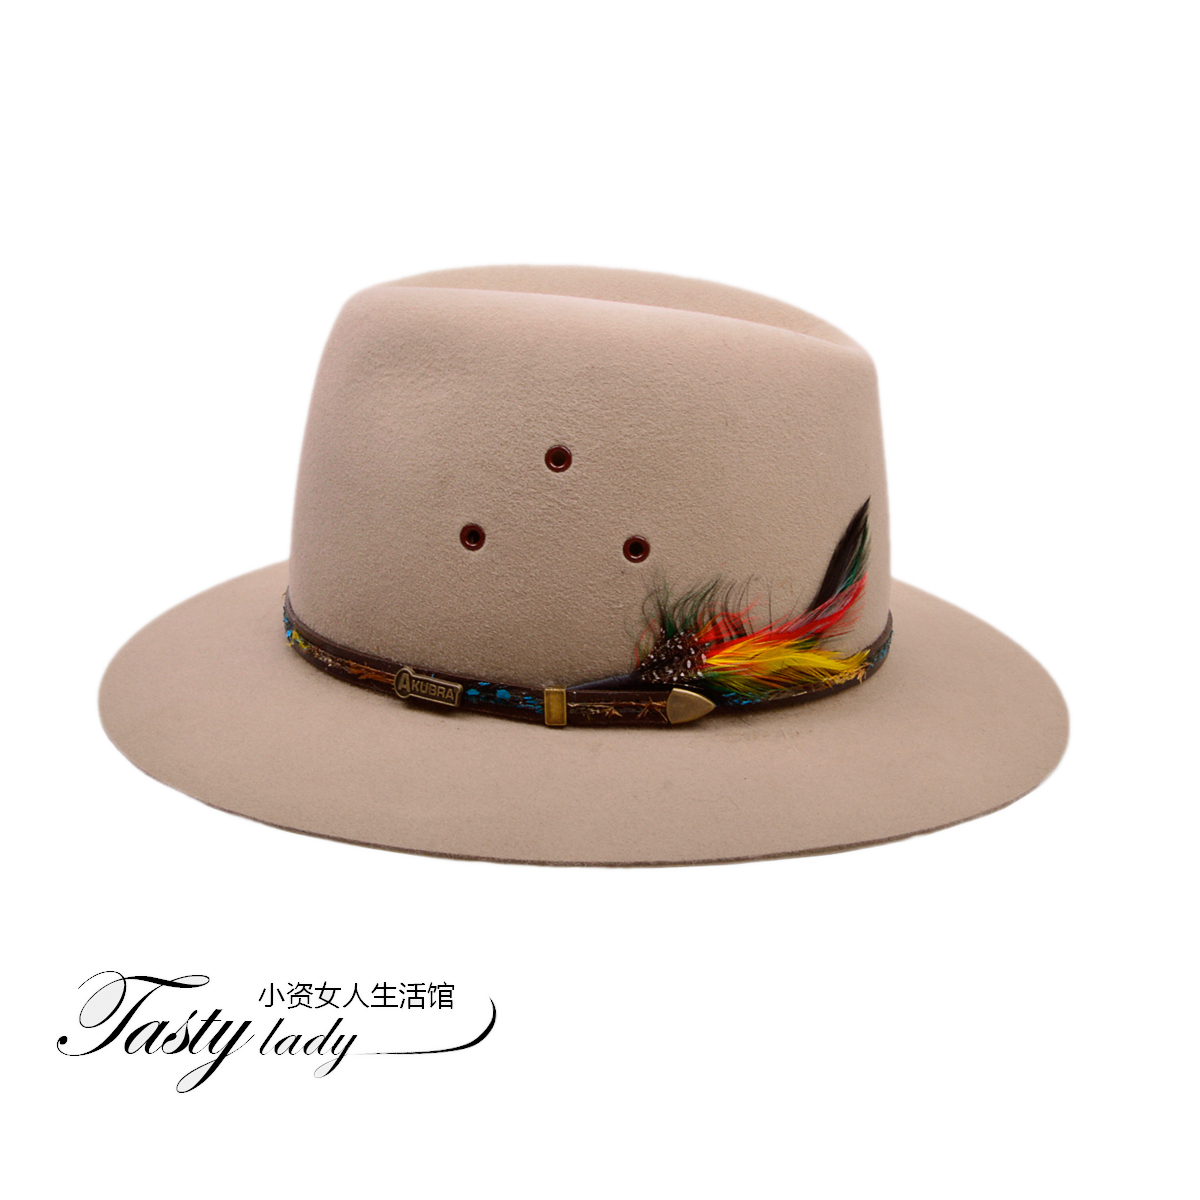 澳洲代购 正品Akubra 帽子 弗来明帽 遮阳帽 UPF50+ 世界名帽世家